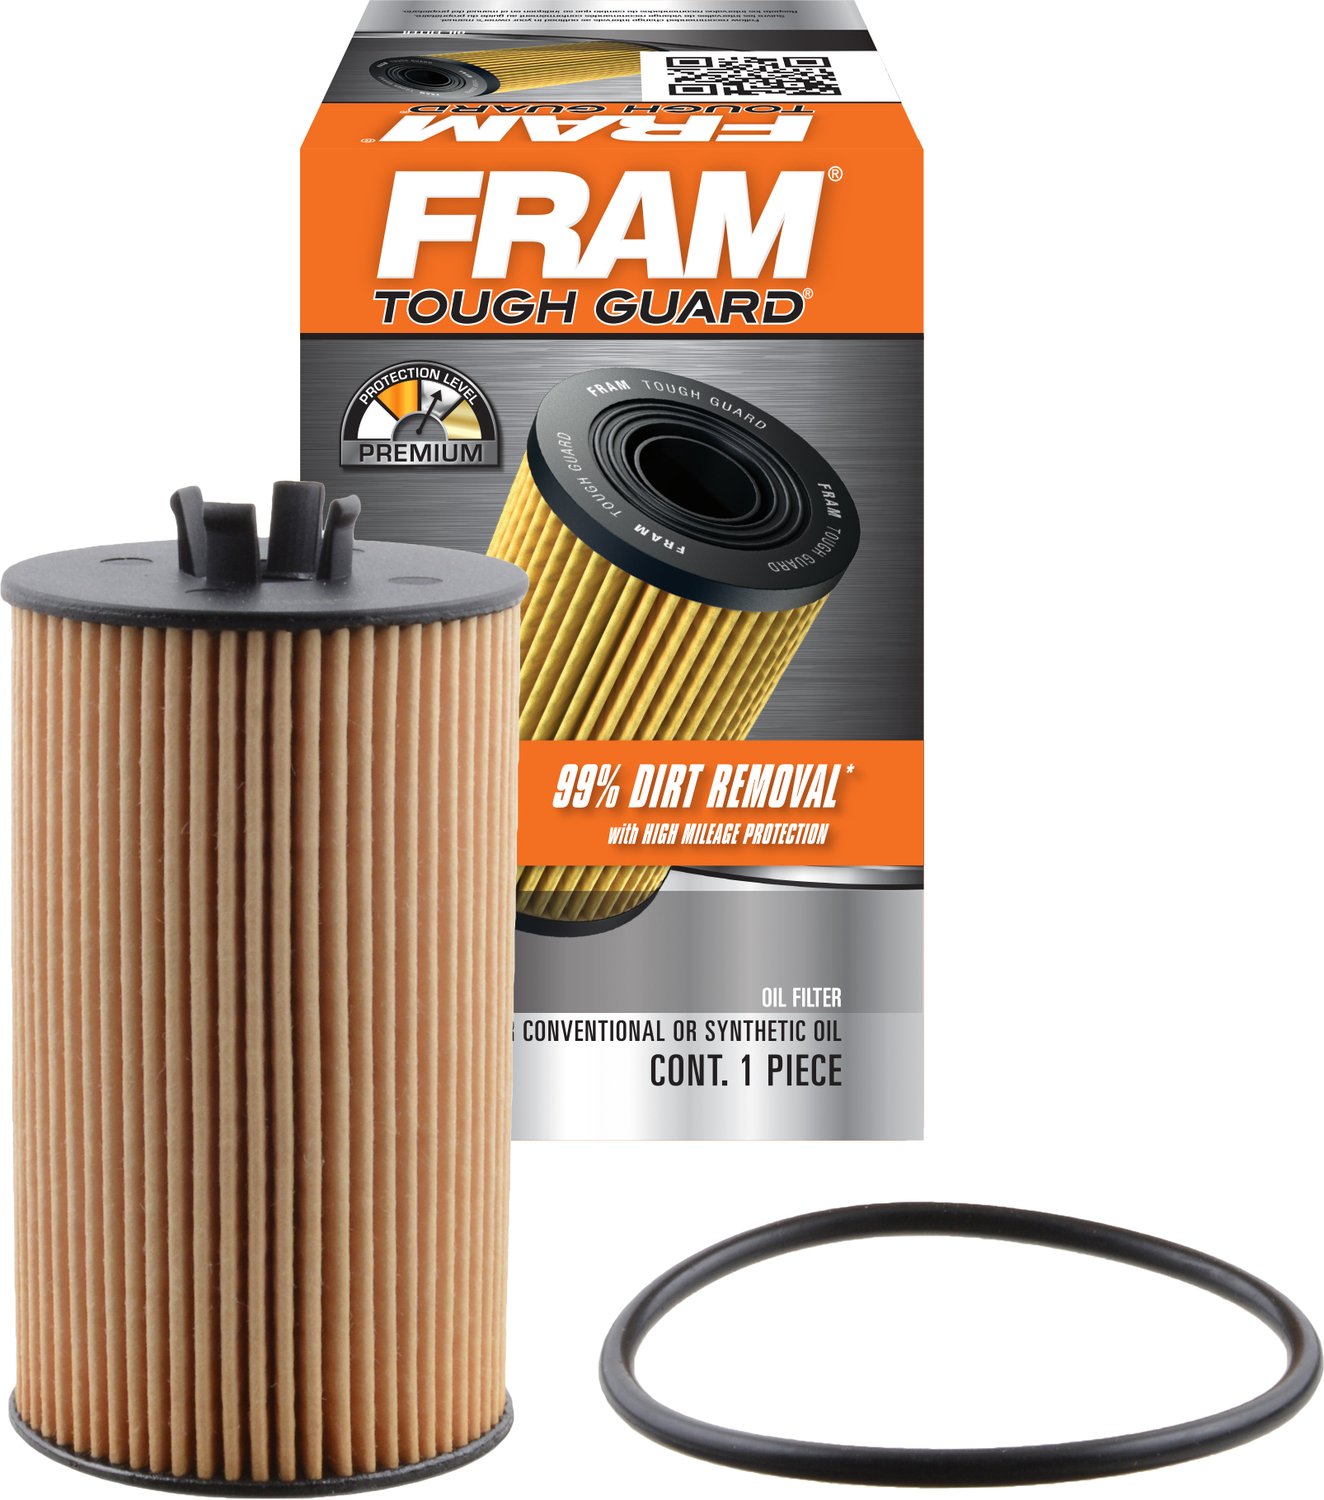 FRAM TG10246 Tough Guard Full-Flow Cartridge Oil Filter